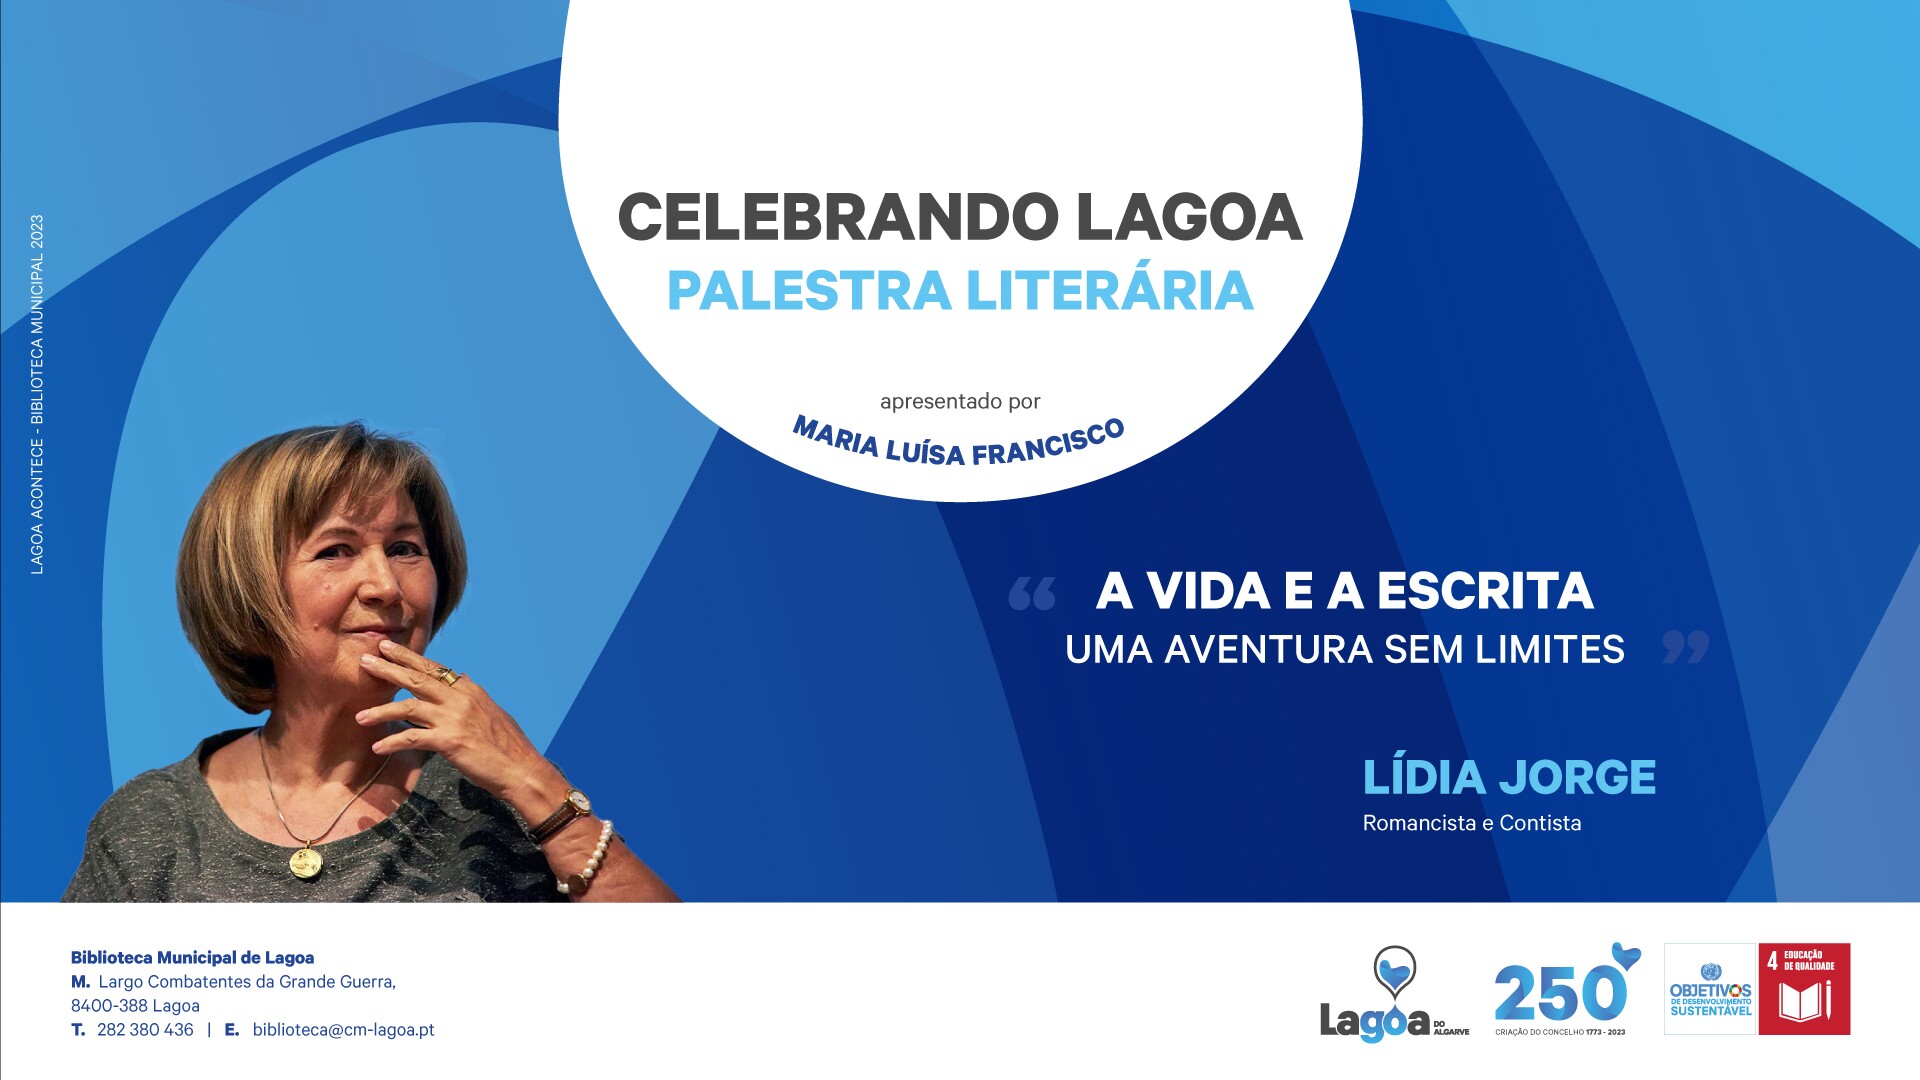 Palestra Literária | "Celebrando Lagoa" | "A Vida e a Escrita Uma Aventura Sem Limites"